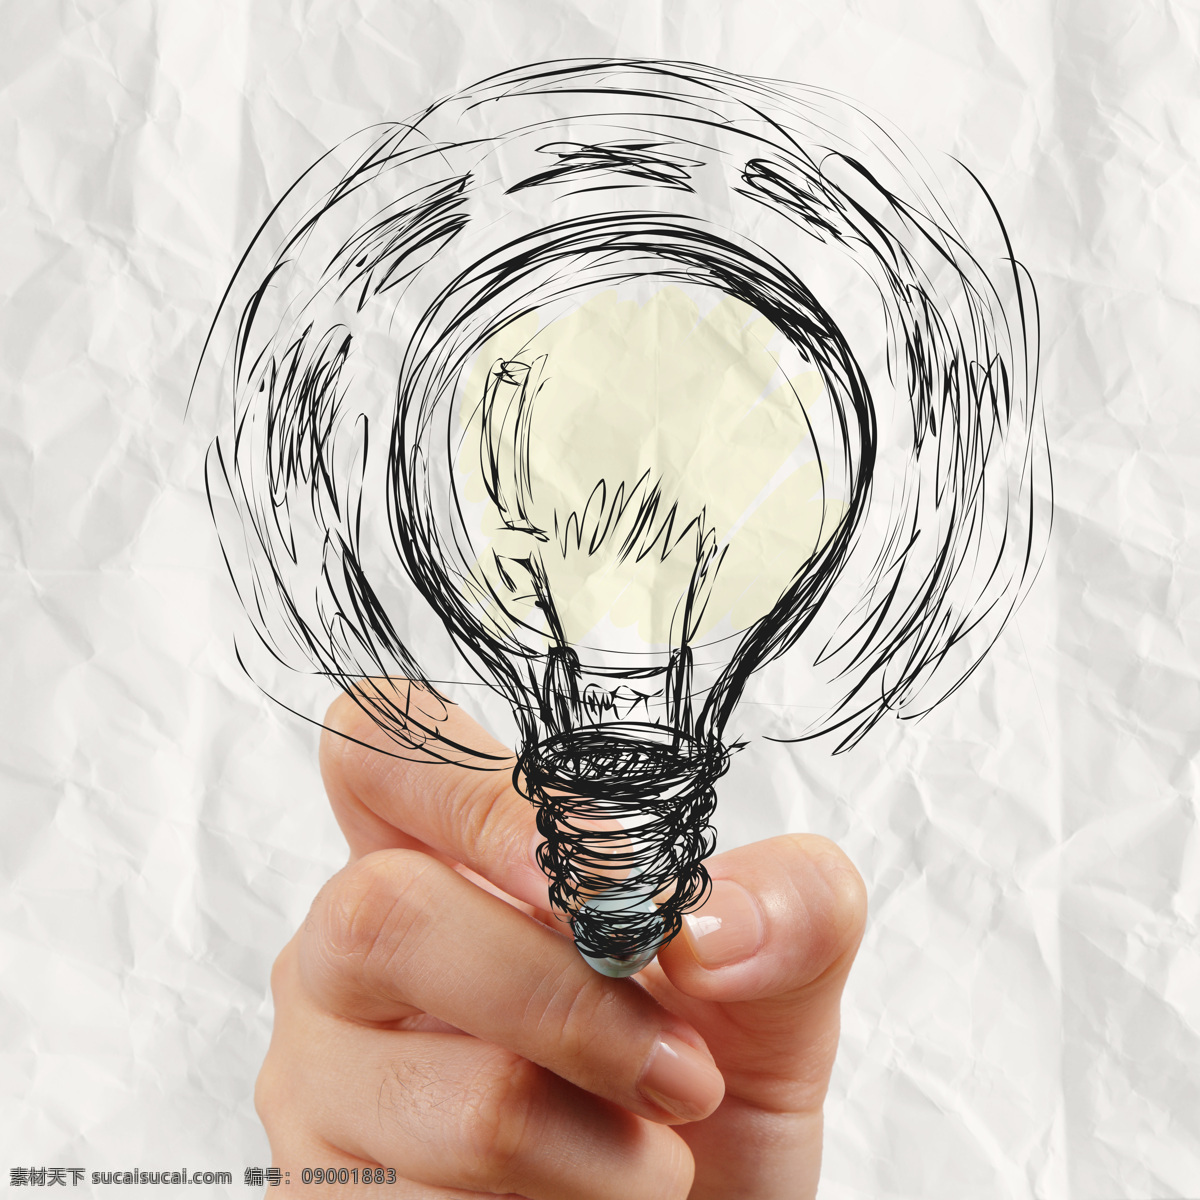 画 电灯泡 握笔手势 电灯 手绘电灯 创意想法 创新思维 其他类别 生活百科